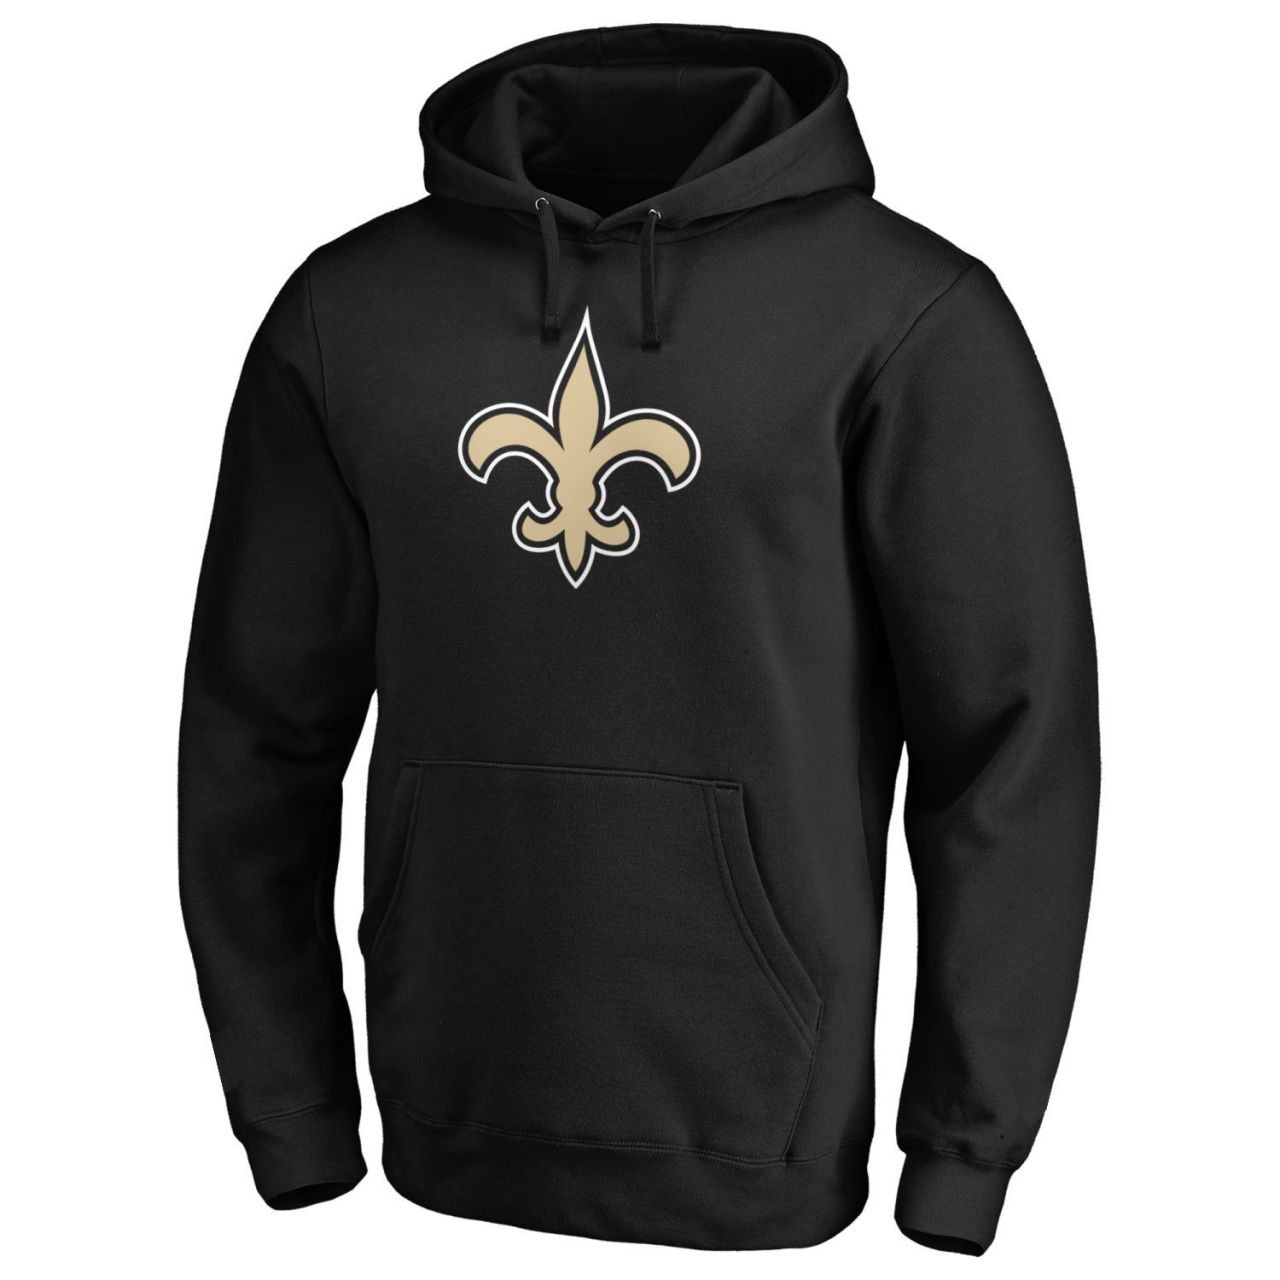 amfoo - New Orleans Saints NFL Fan Hoody Iconic Logo schwarz